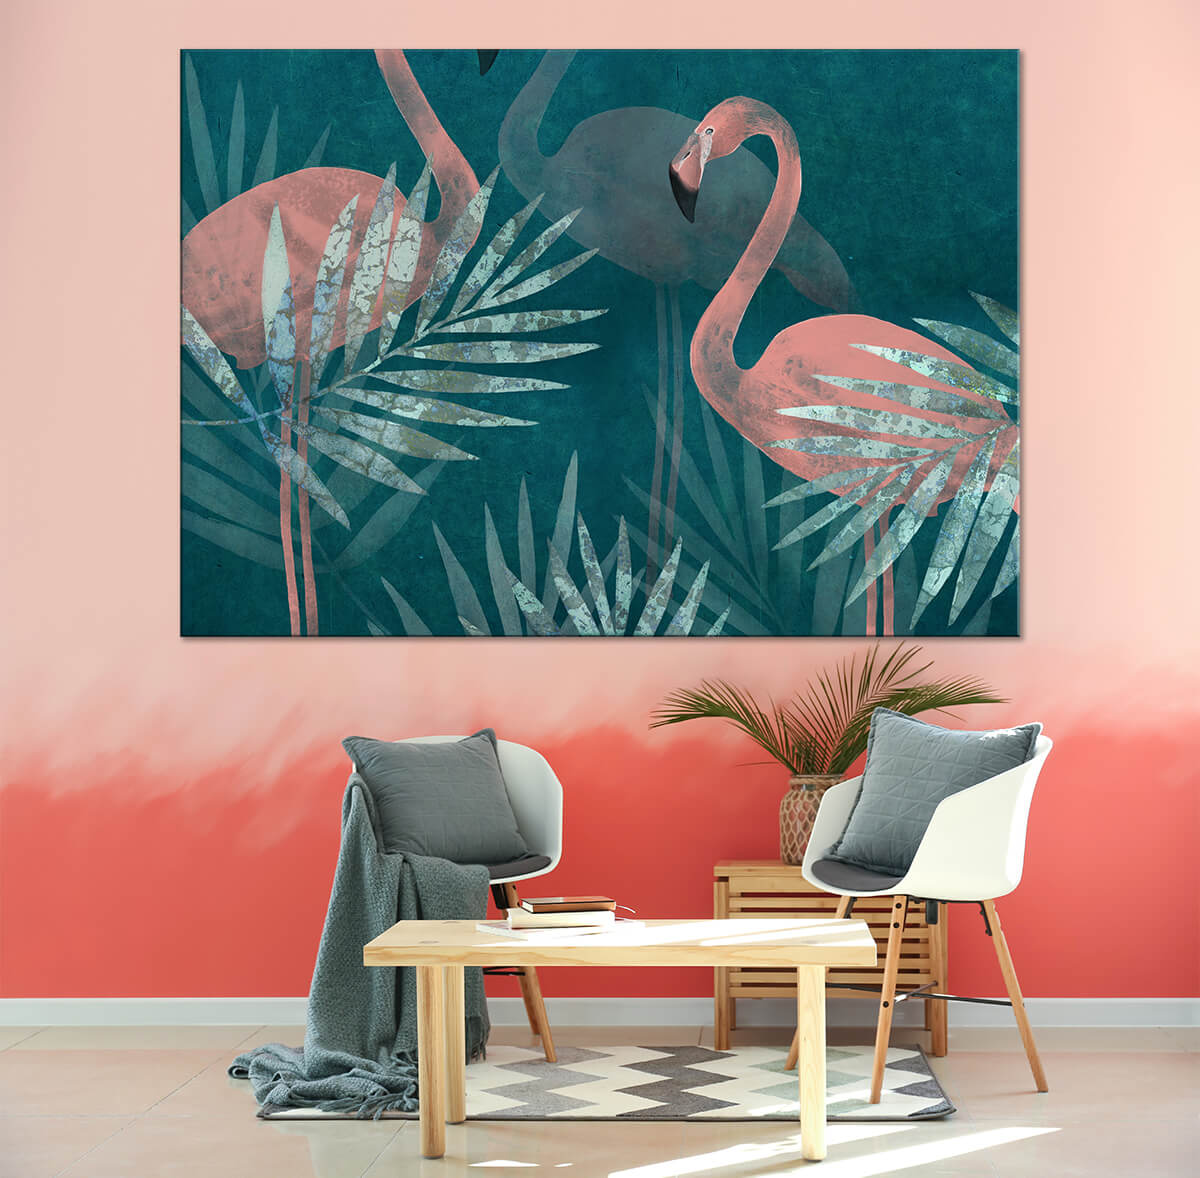 nowoczesne wnętrze w kolorach pudrowego różu obraz na ścianę z flamingami